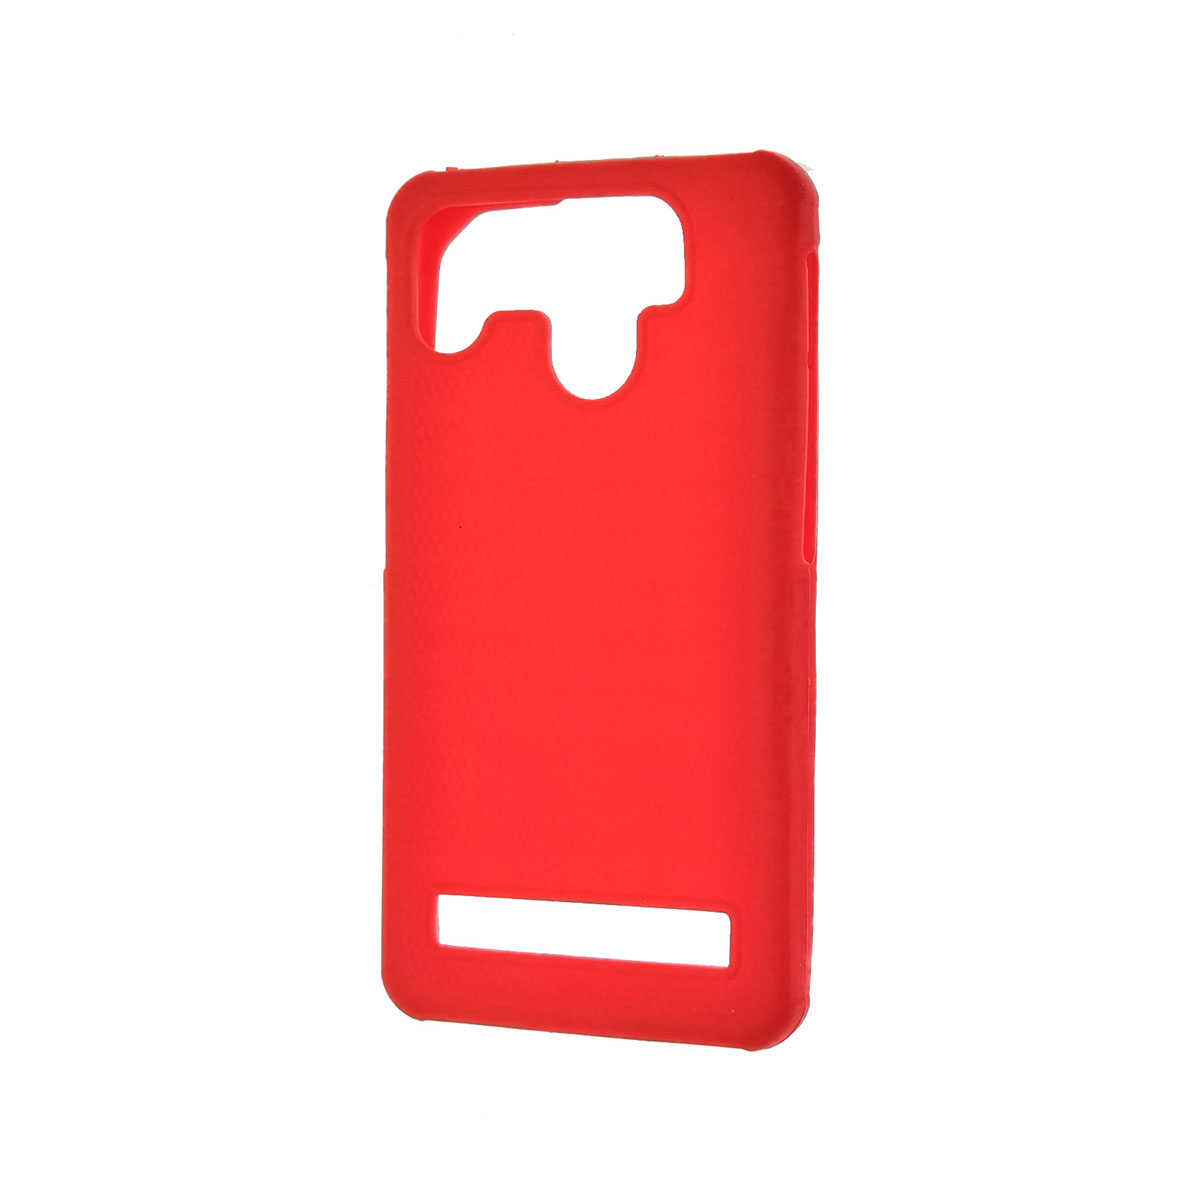 Чехол накладка универсальная 4.0 дюймов, силикон, экокожа, цвет красный.